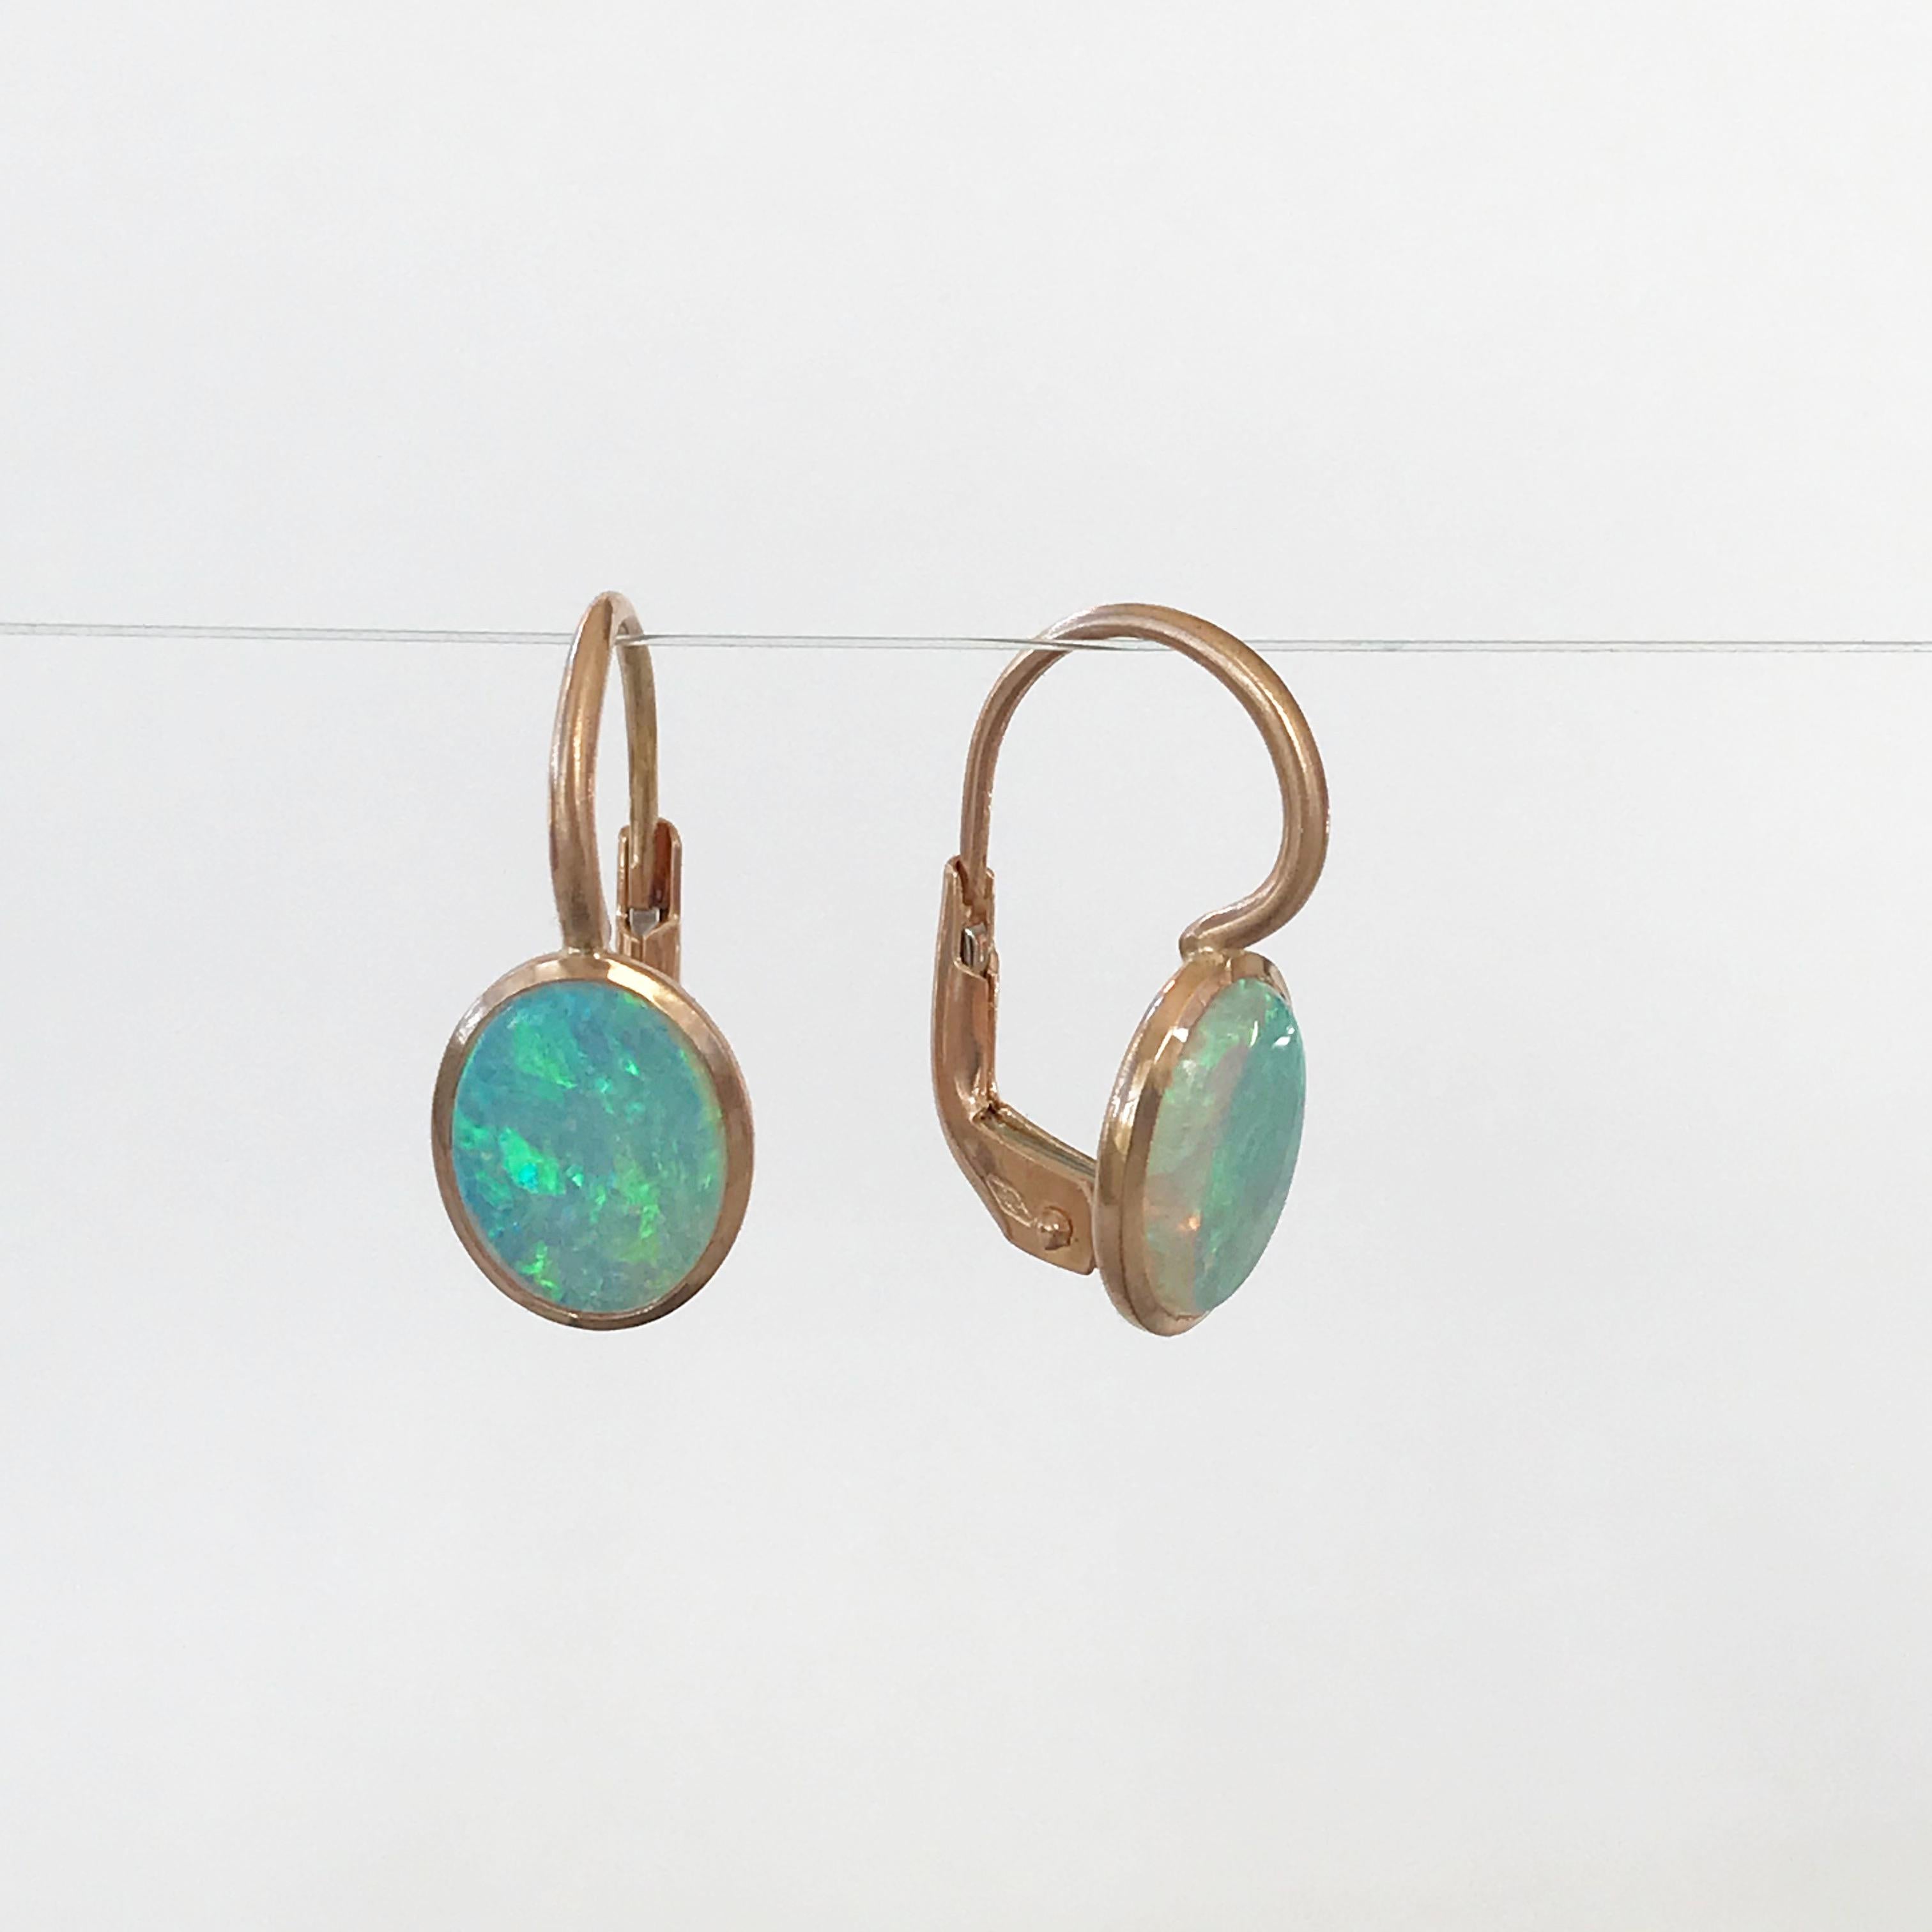 Dalben Little Oval Australian Opal Rose Gold Earrings 7